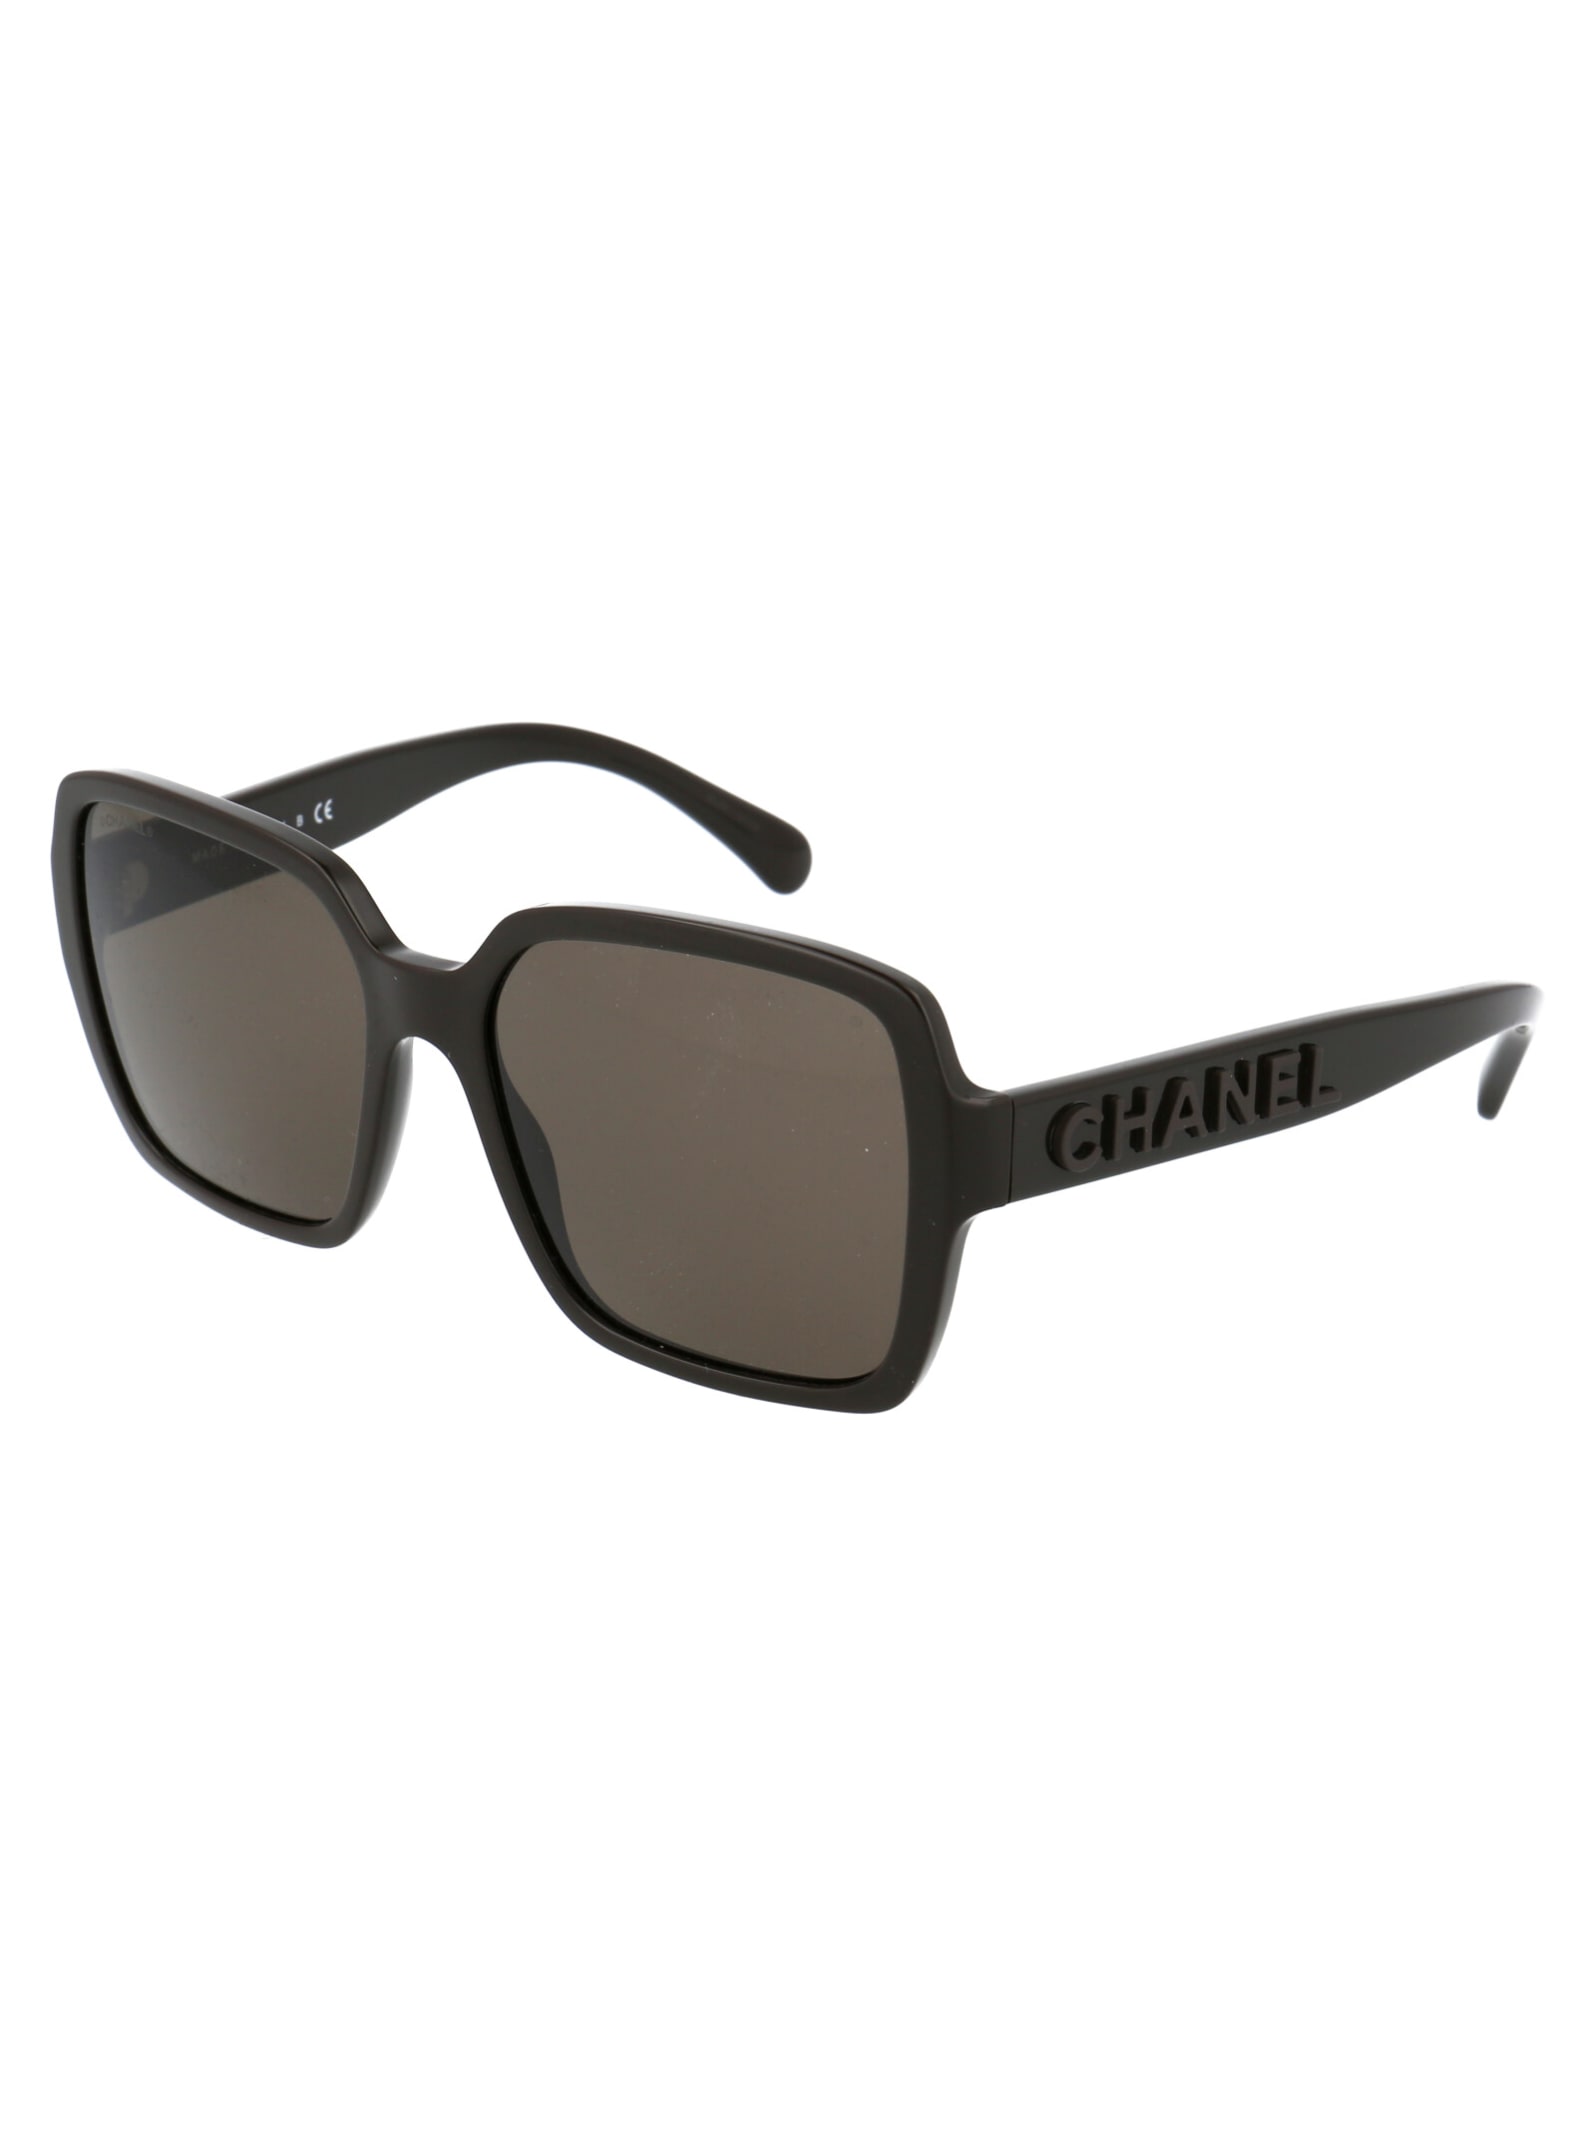 Chanel 0ch5408 Sunglasses